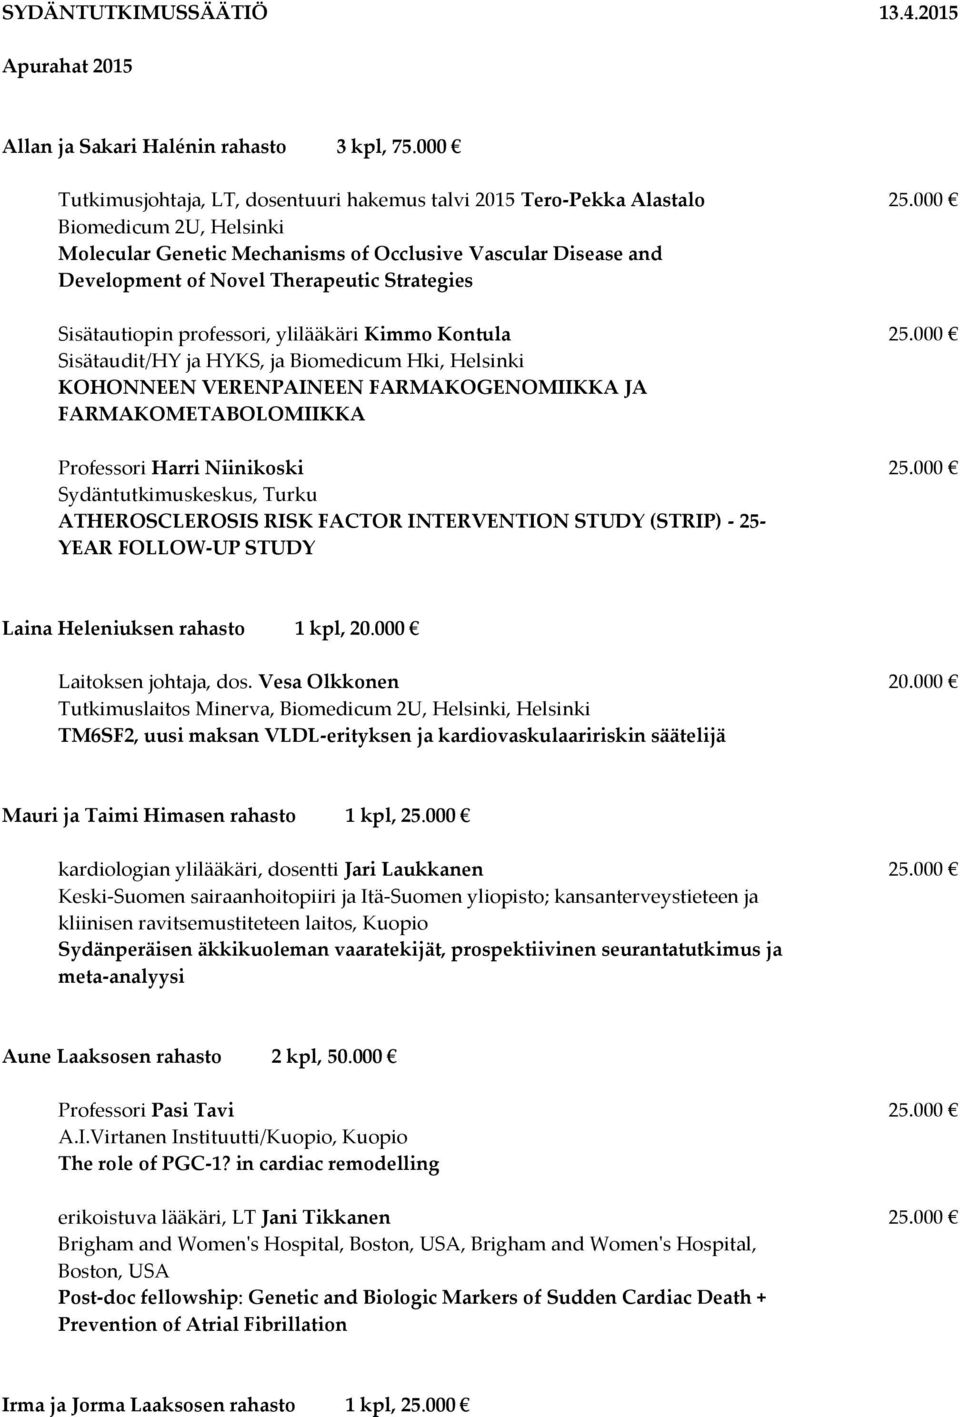 000 Sisätaudit/HY ja HYKS, ja Biomedicum Hki, Helsinki KOHONNEEN VERENPAINEEN FARMAKOGENOMIIKKA JA FARMAKOMETABOLOMIIKKA Professori Harri Niinikoski 25.